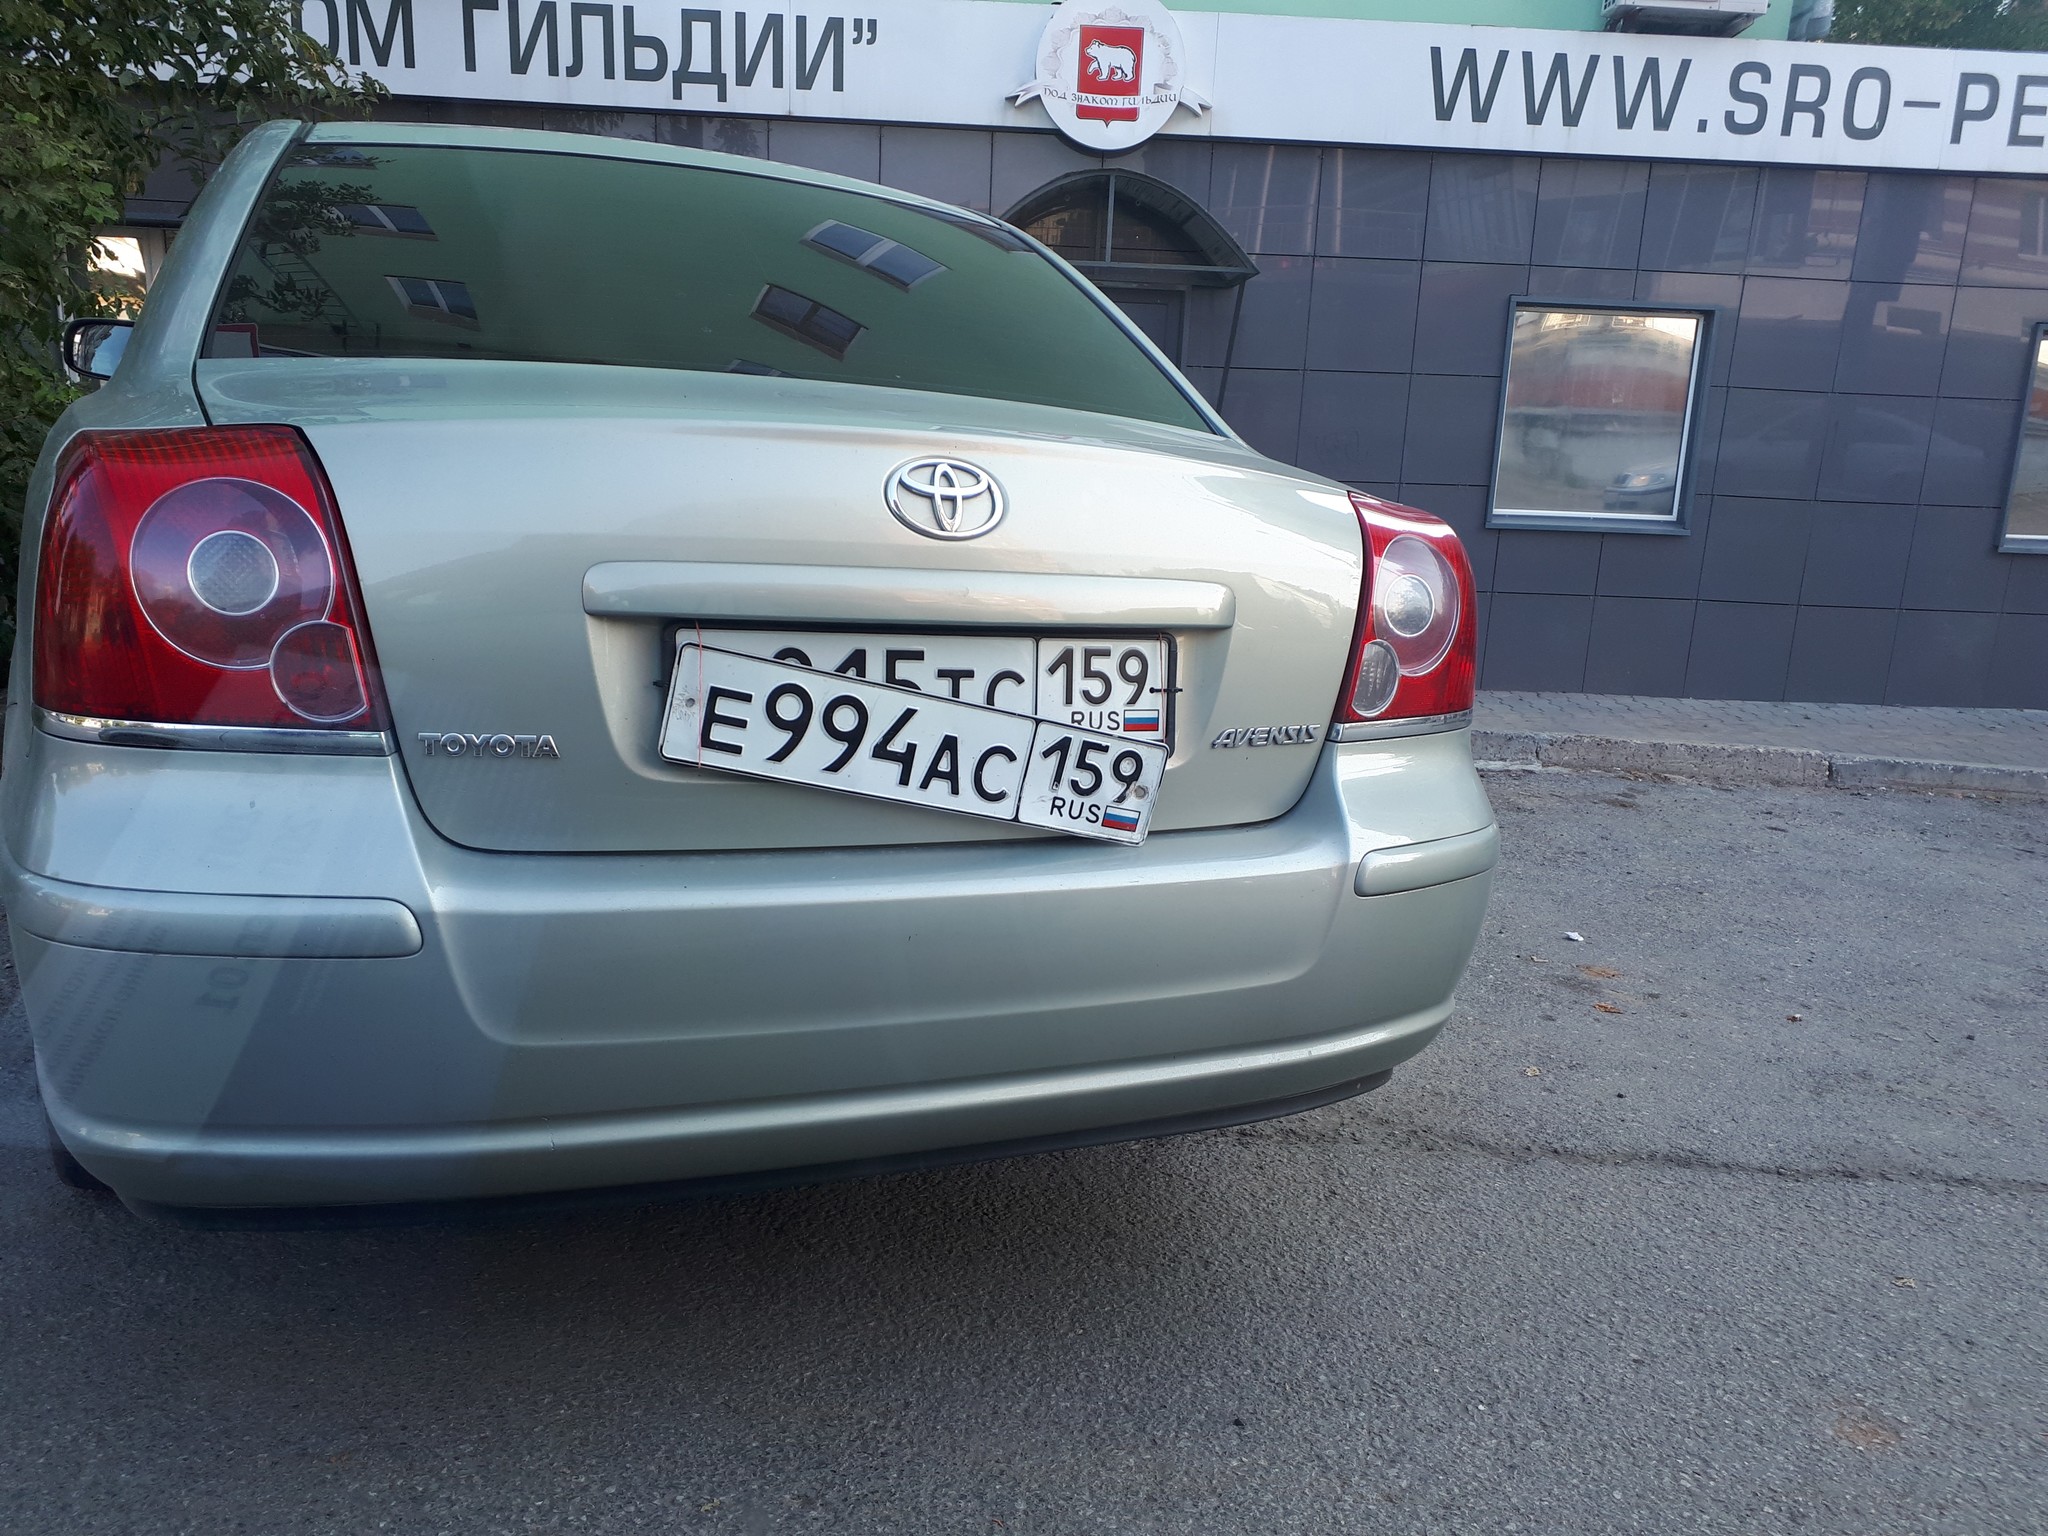 Номер ви. Номера вас. Тойота с белорусскими номерами. Lexus 2006.